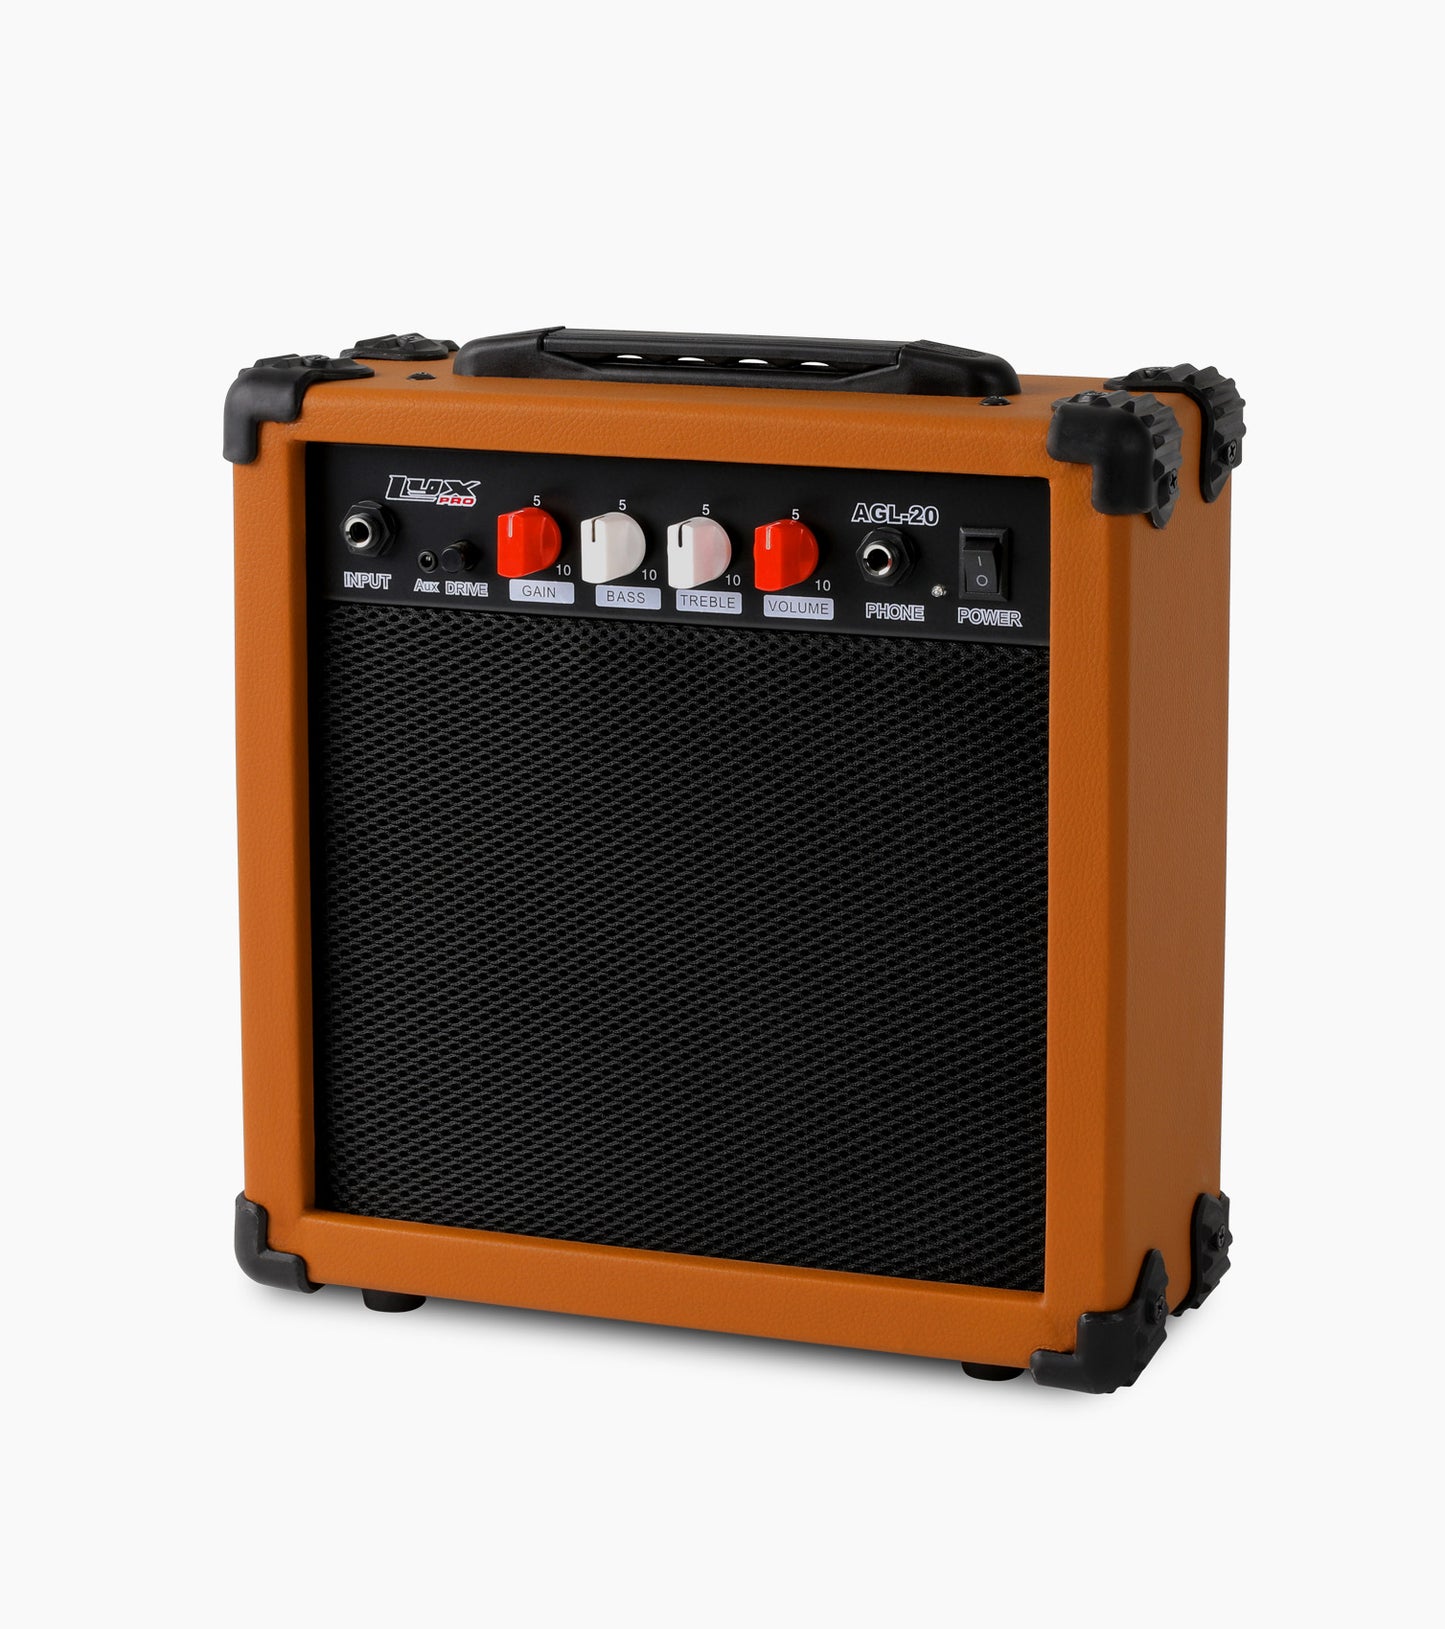 Mahogany 20 watt electric guitar amplifier